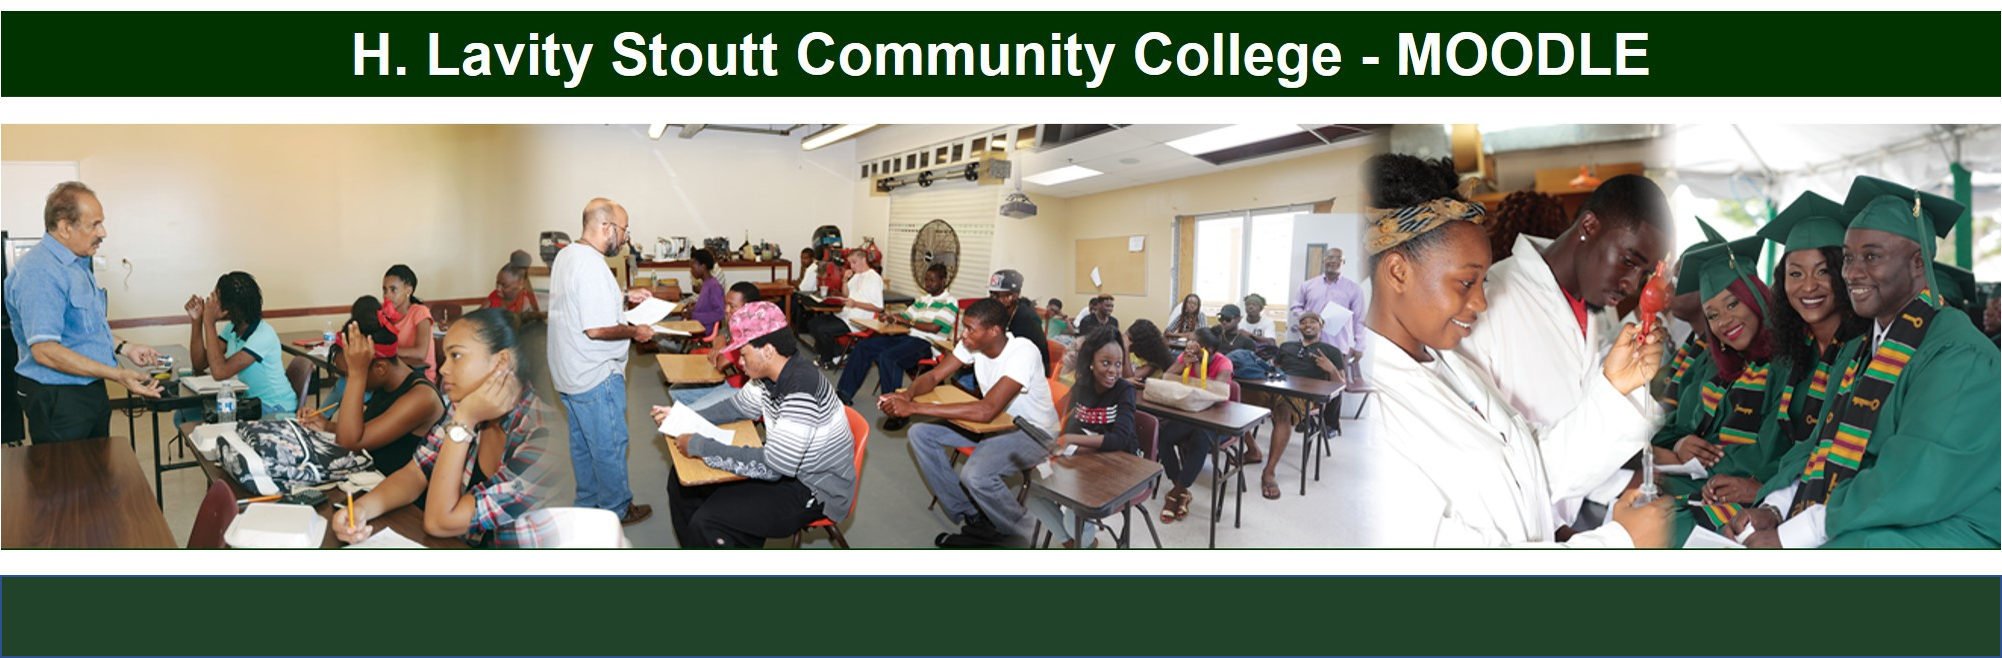 H. Lavity Stoutt Community College - Moodle